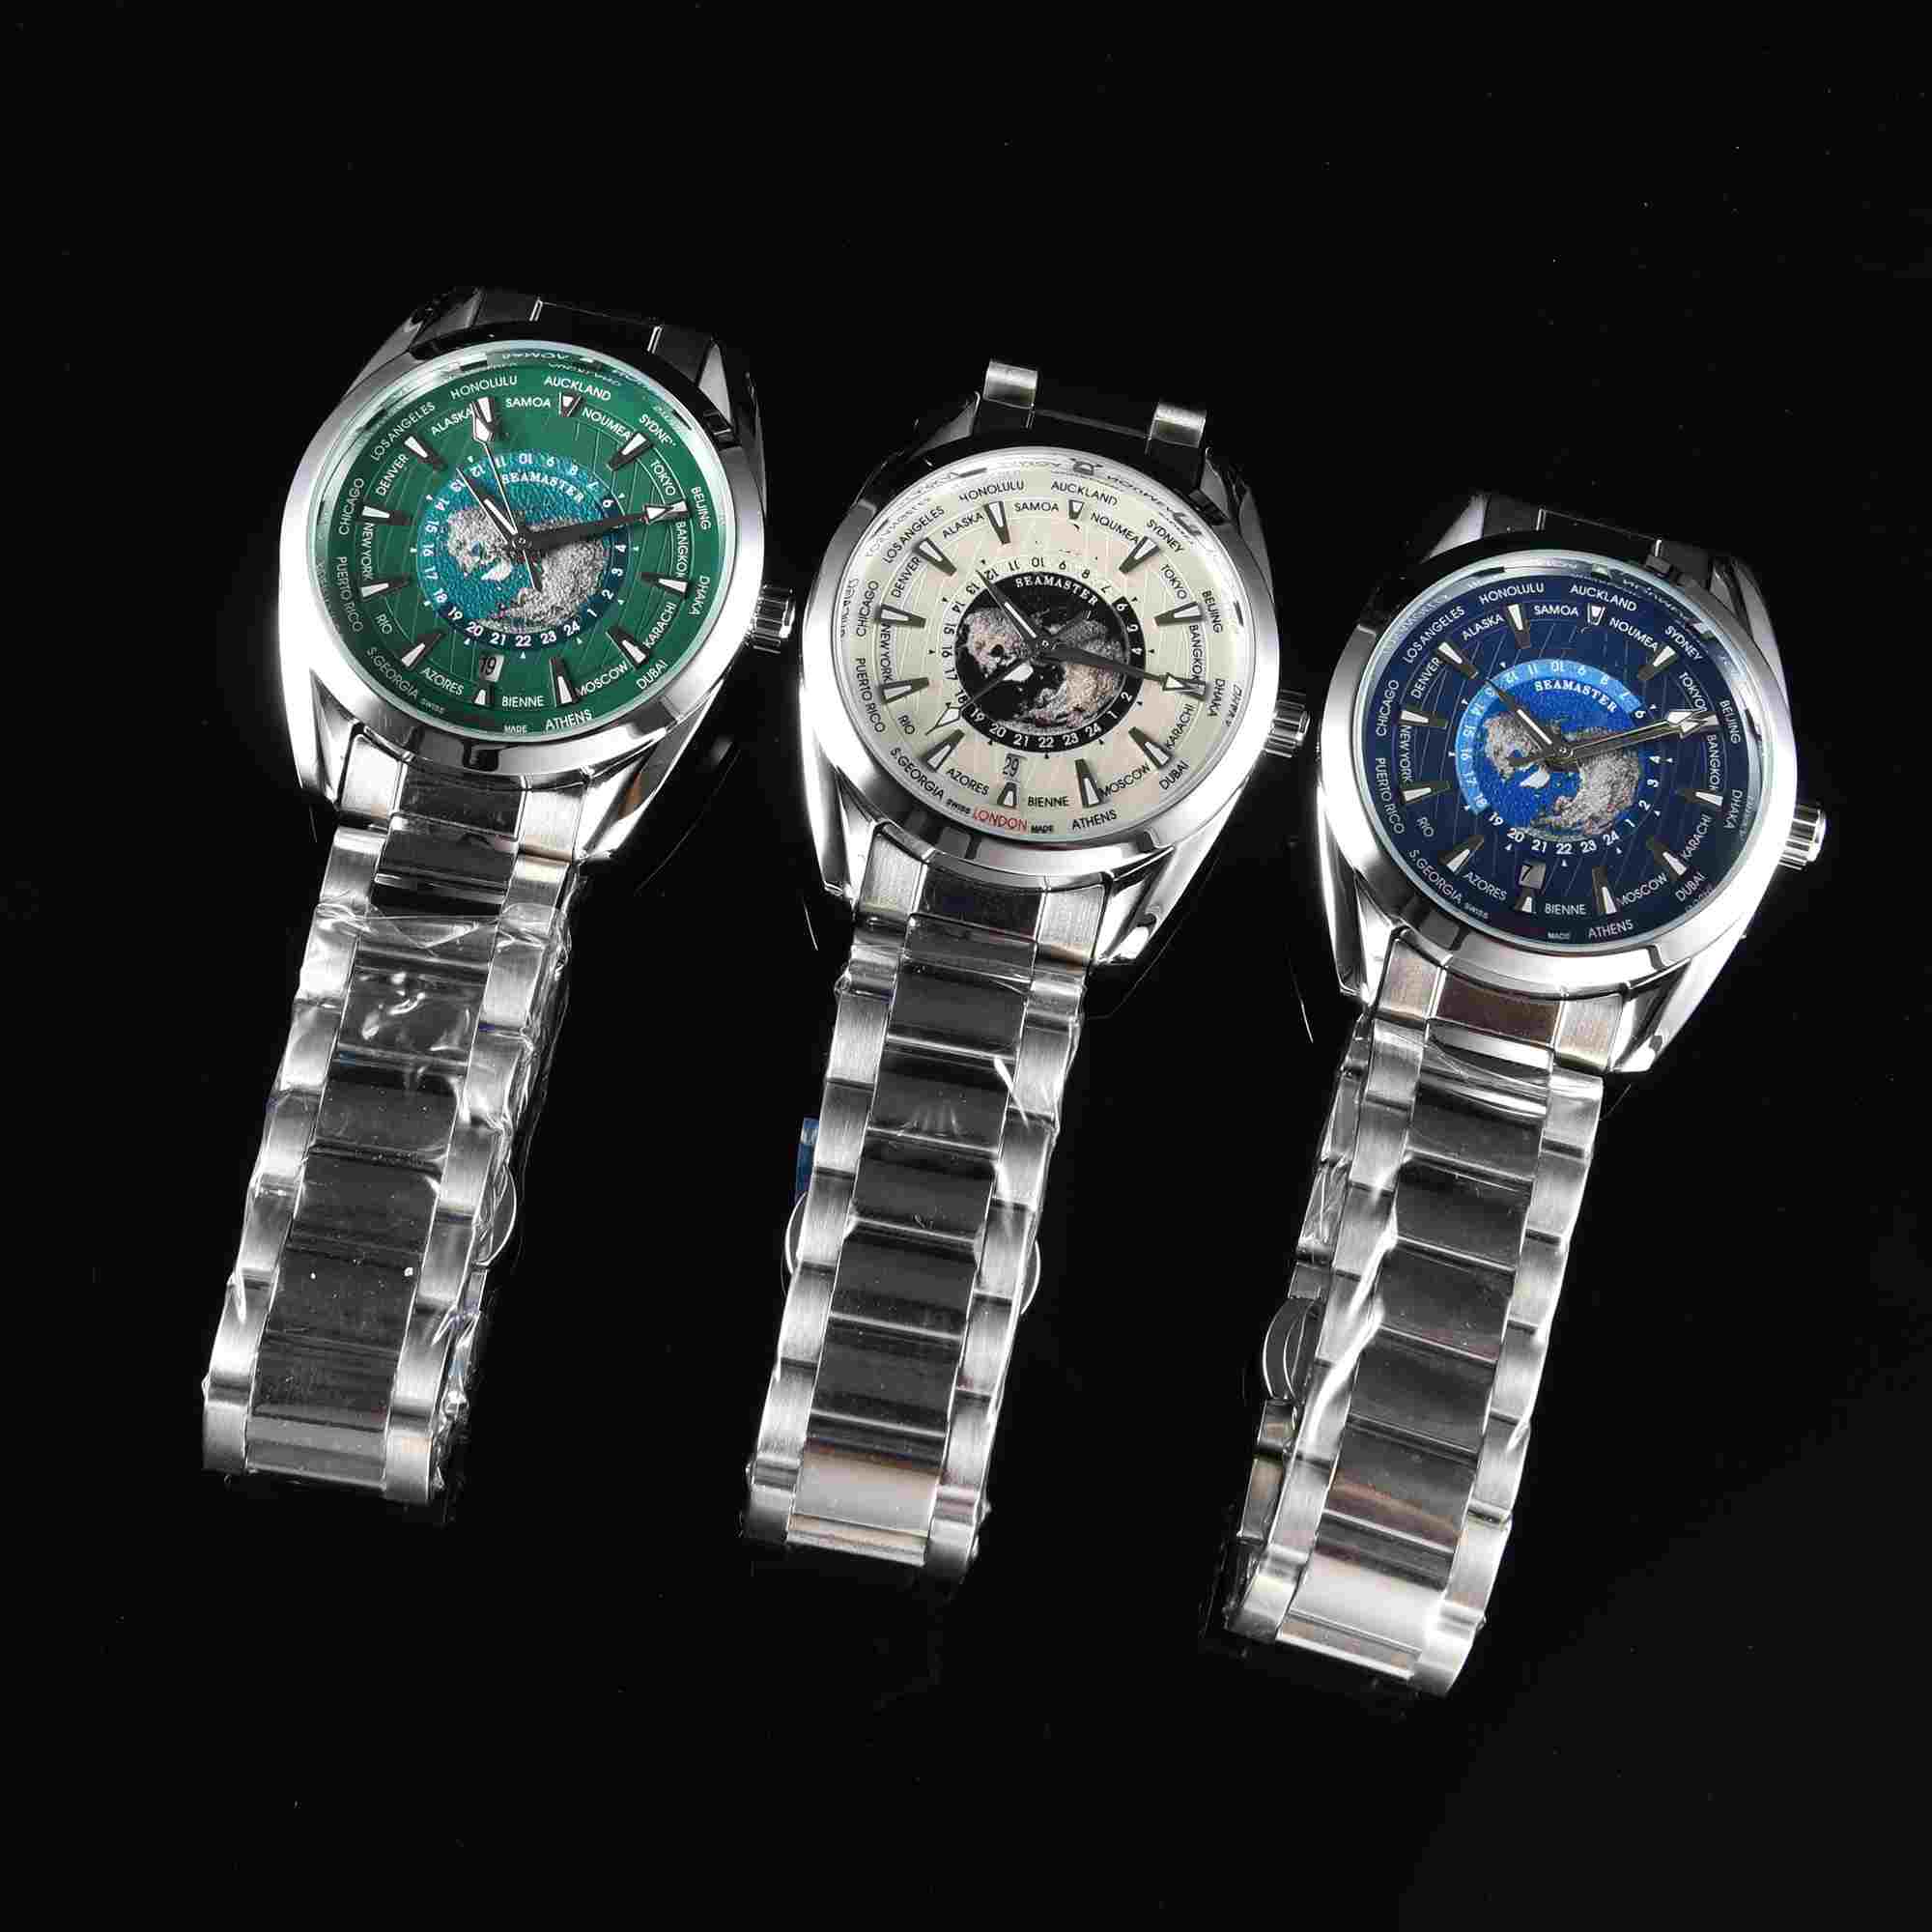 자동 기계식 남성 시계, 최고 브랜드 럭셔리 시계 라운드 프레임 3 핀 디스플레이 캘린더 스틸 밴드